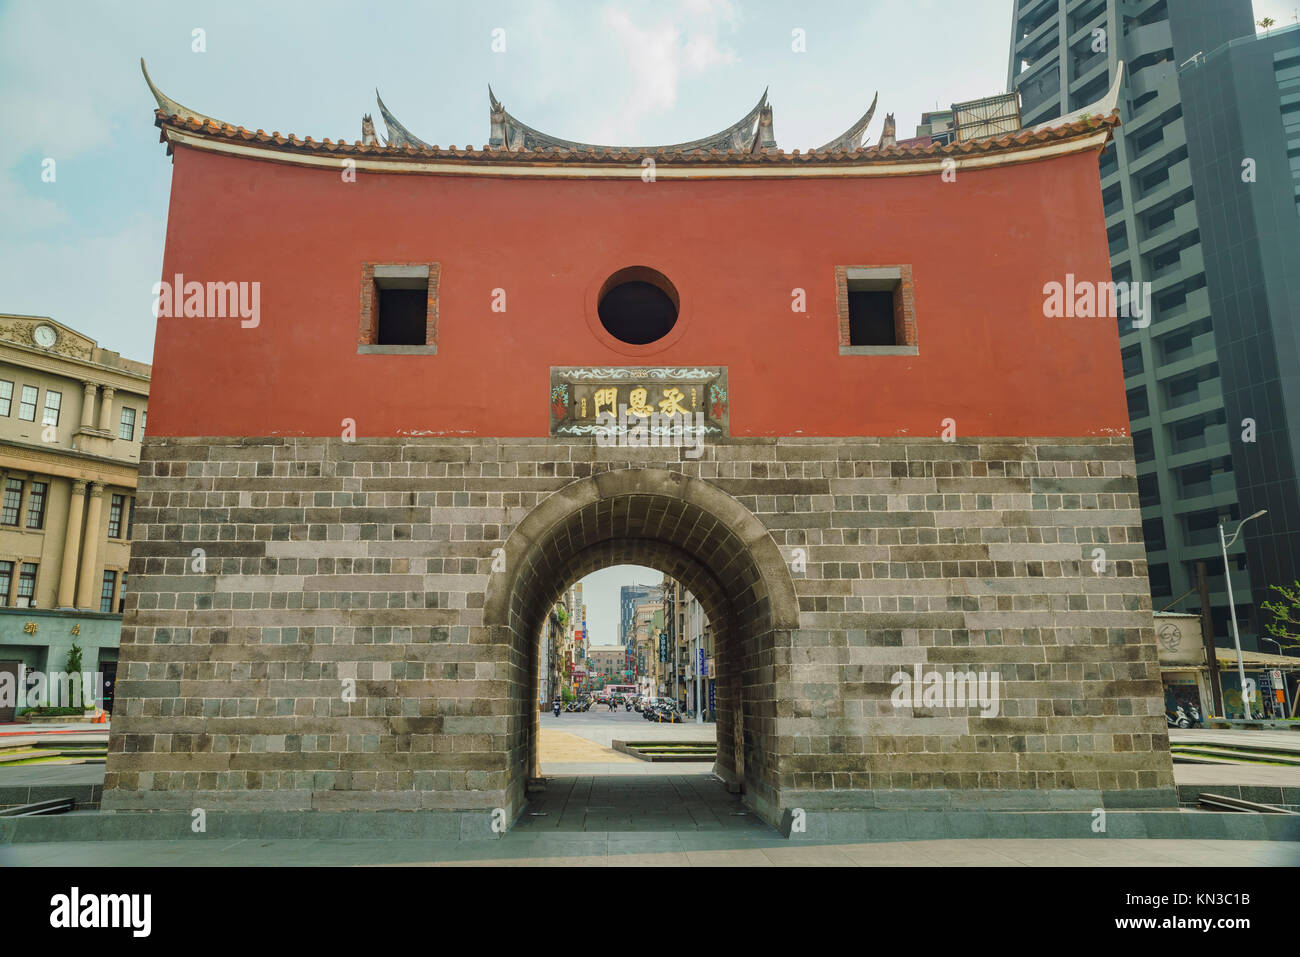 Taipei, AUG 18: The historical Cheng En Gate on AUG 18, 2017 at Taipei, Taiwan Stock Photo